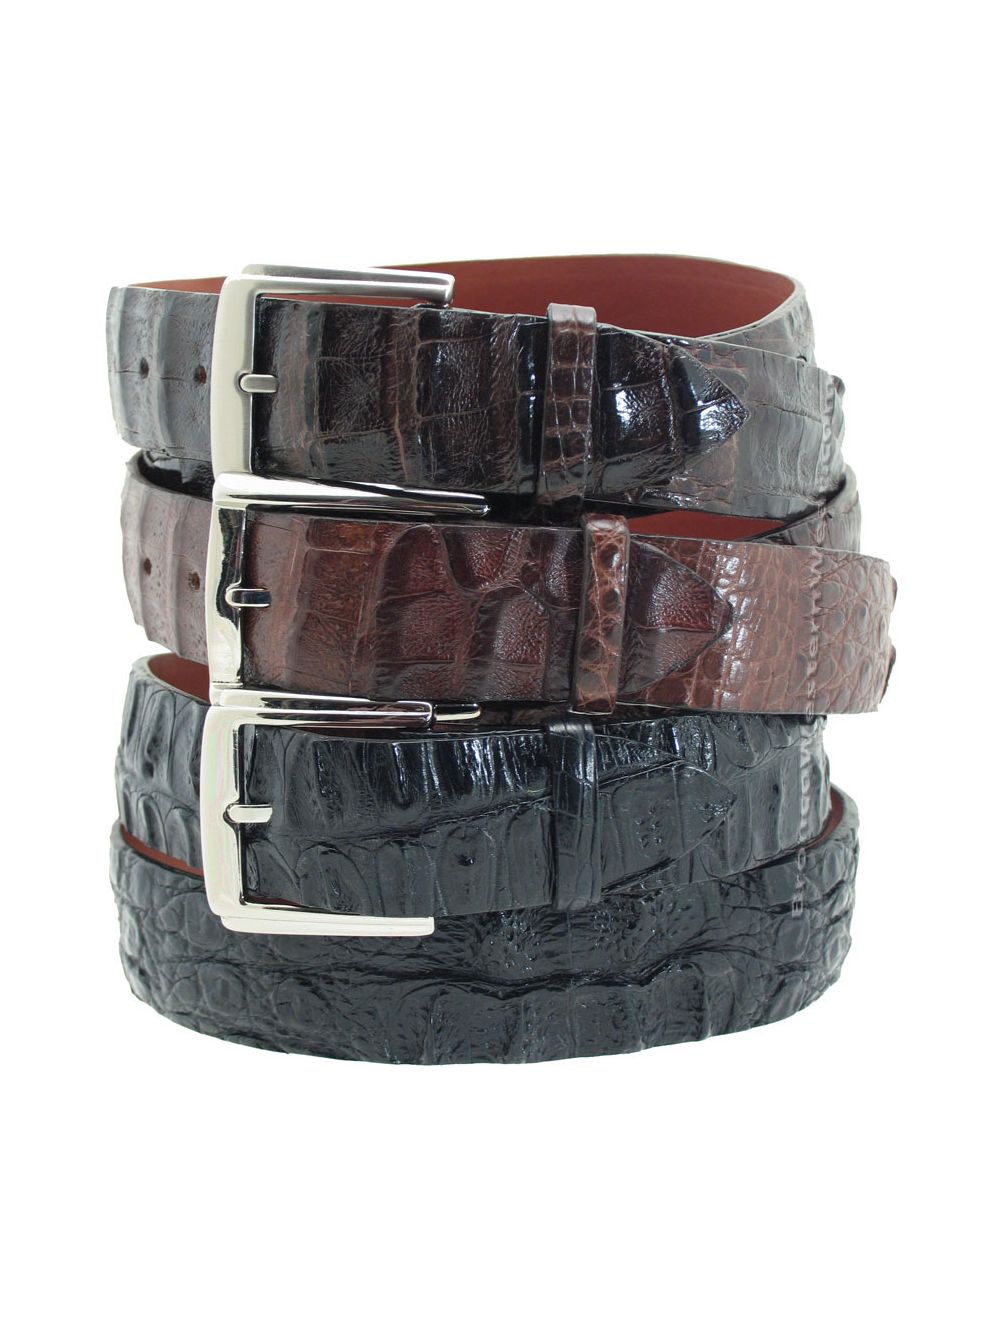 Genuine crocodi alligato hornback leather skin handmade black belts buckles for men,vintage western cowboy leather belt for man,largest size